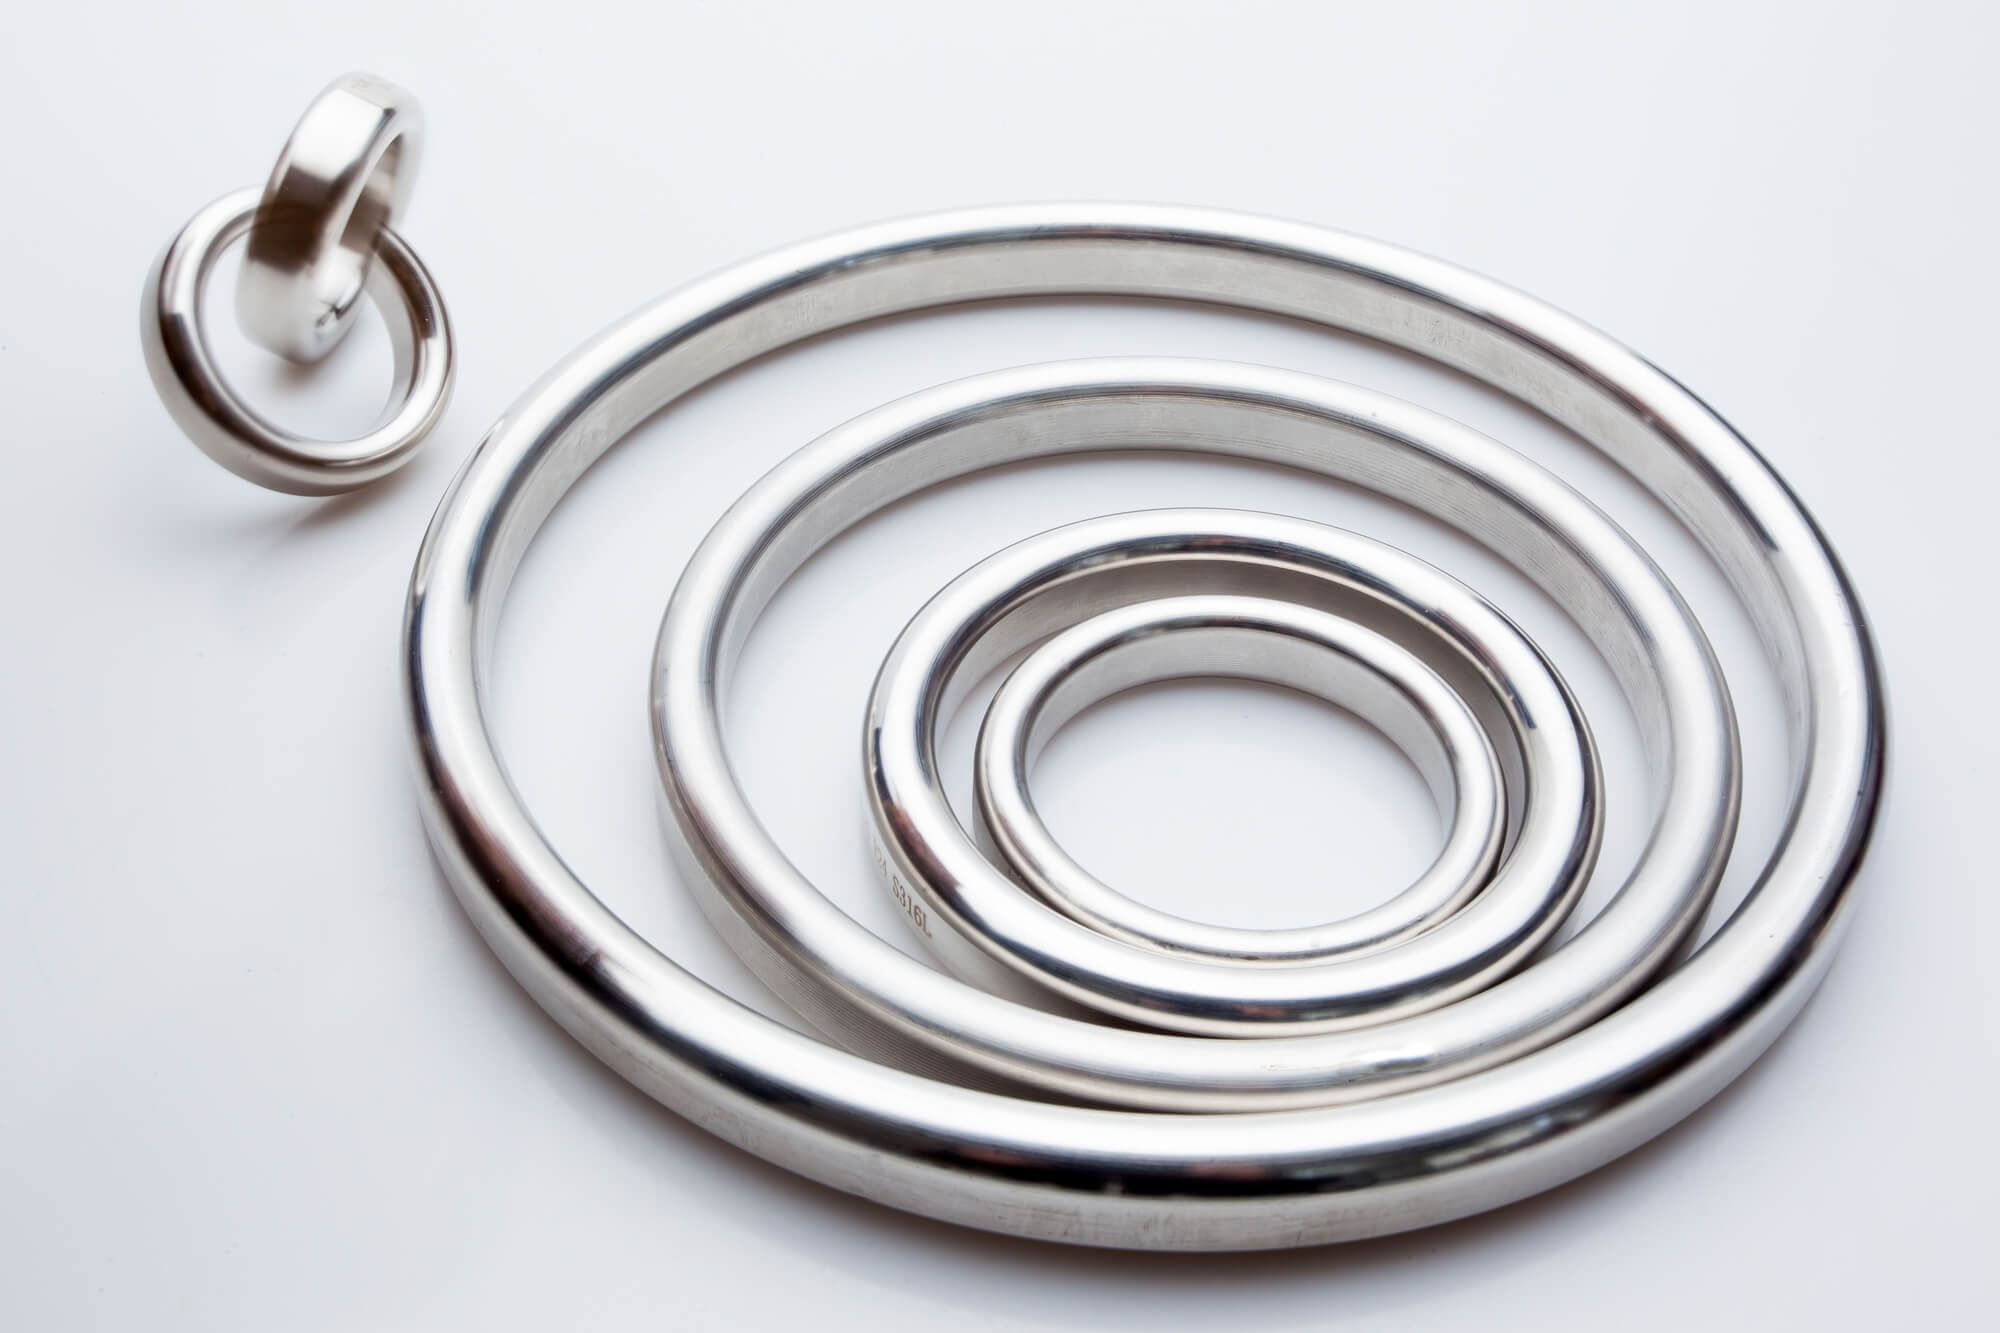 Seamless Rolled Rings: Bearings